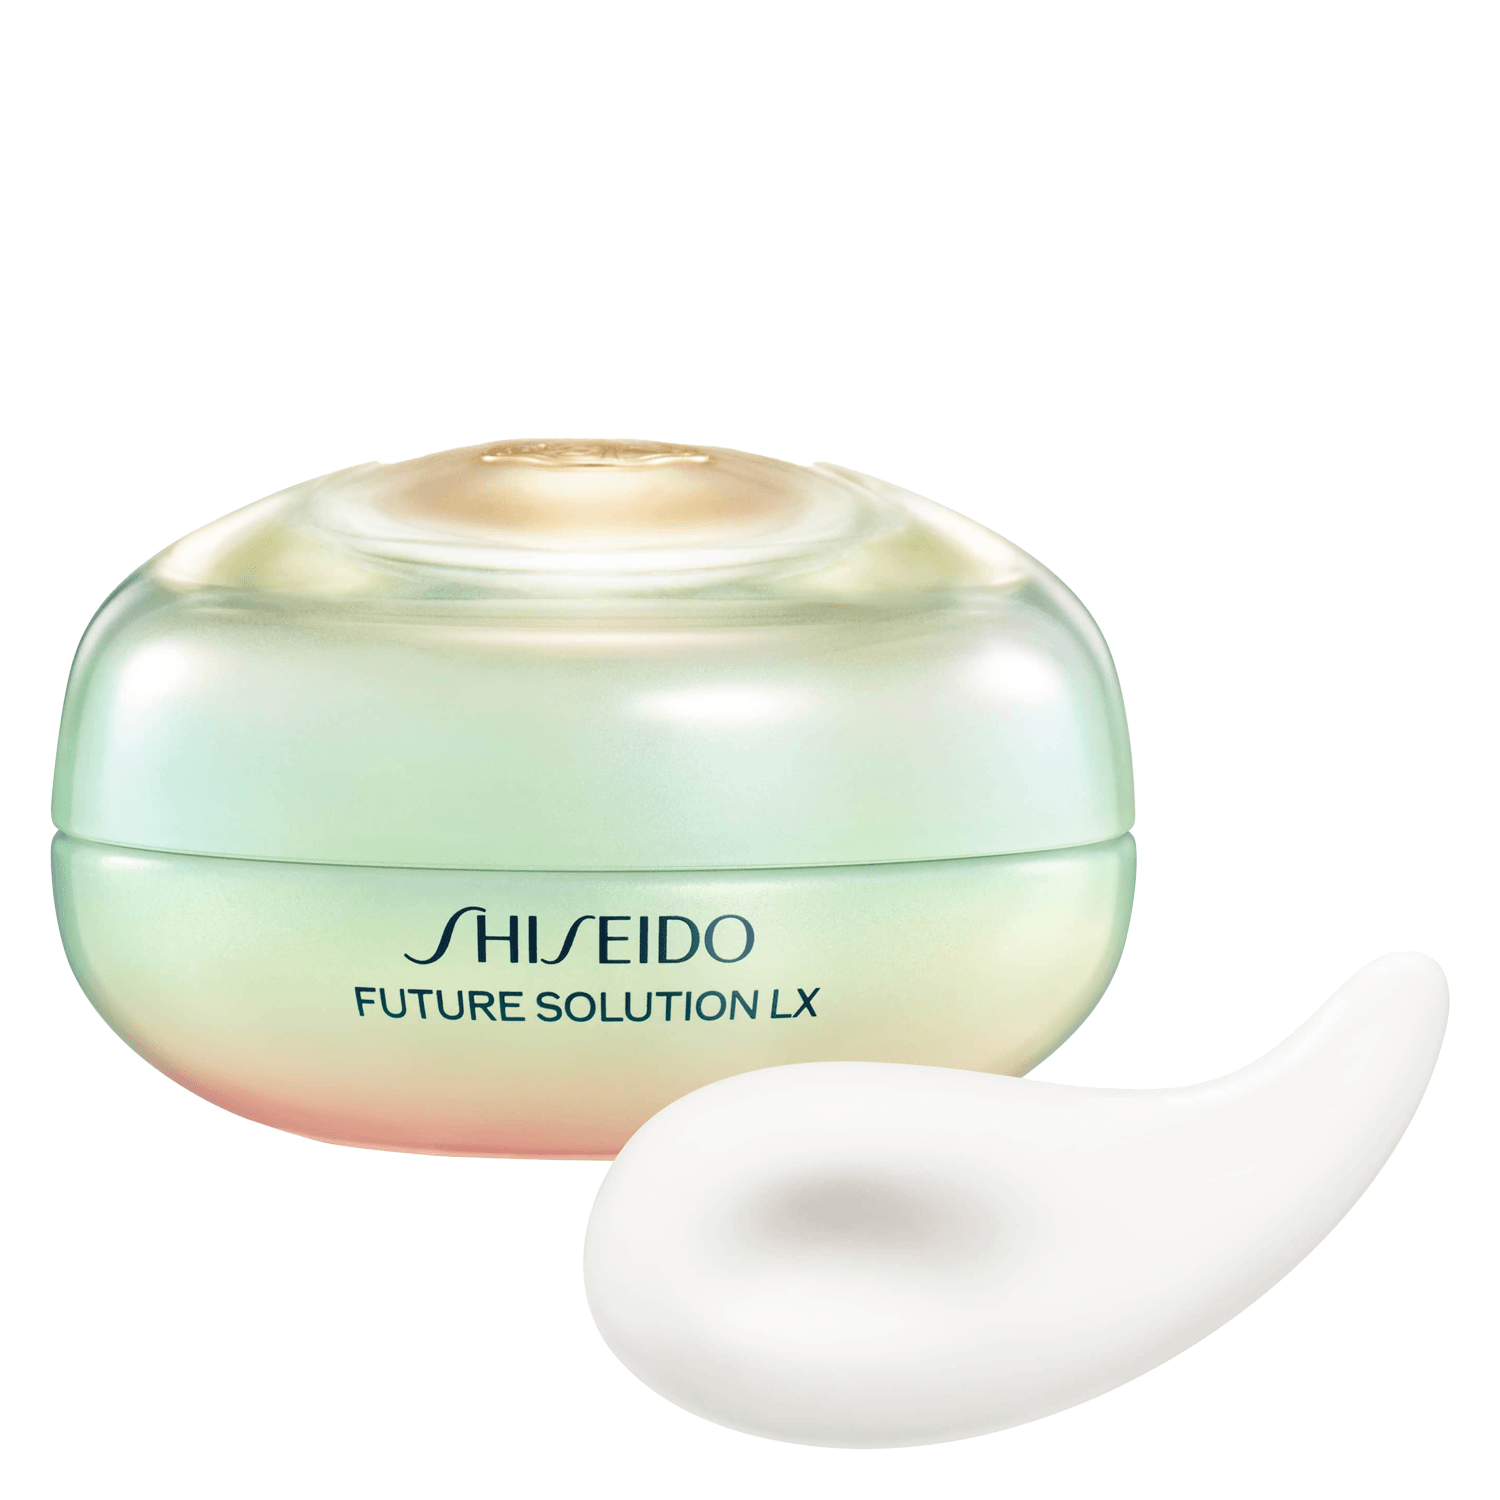 Produktbild von Future Solution LX - Legendary Enmei Ultimate Brilliance Eye Cream